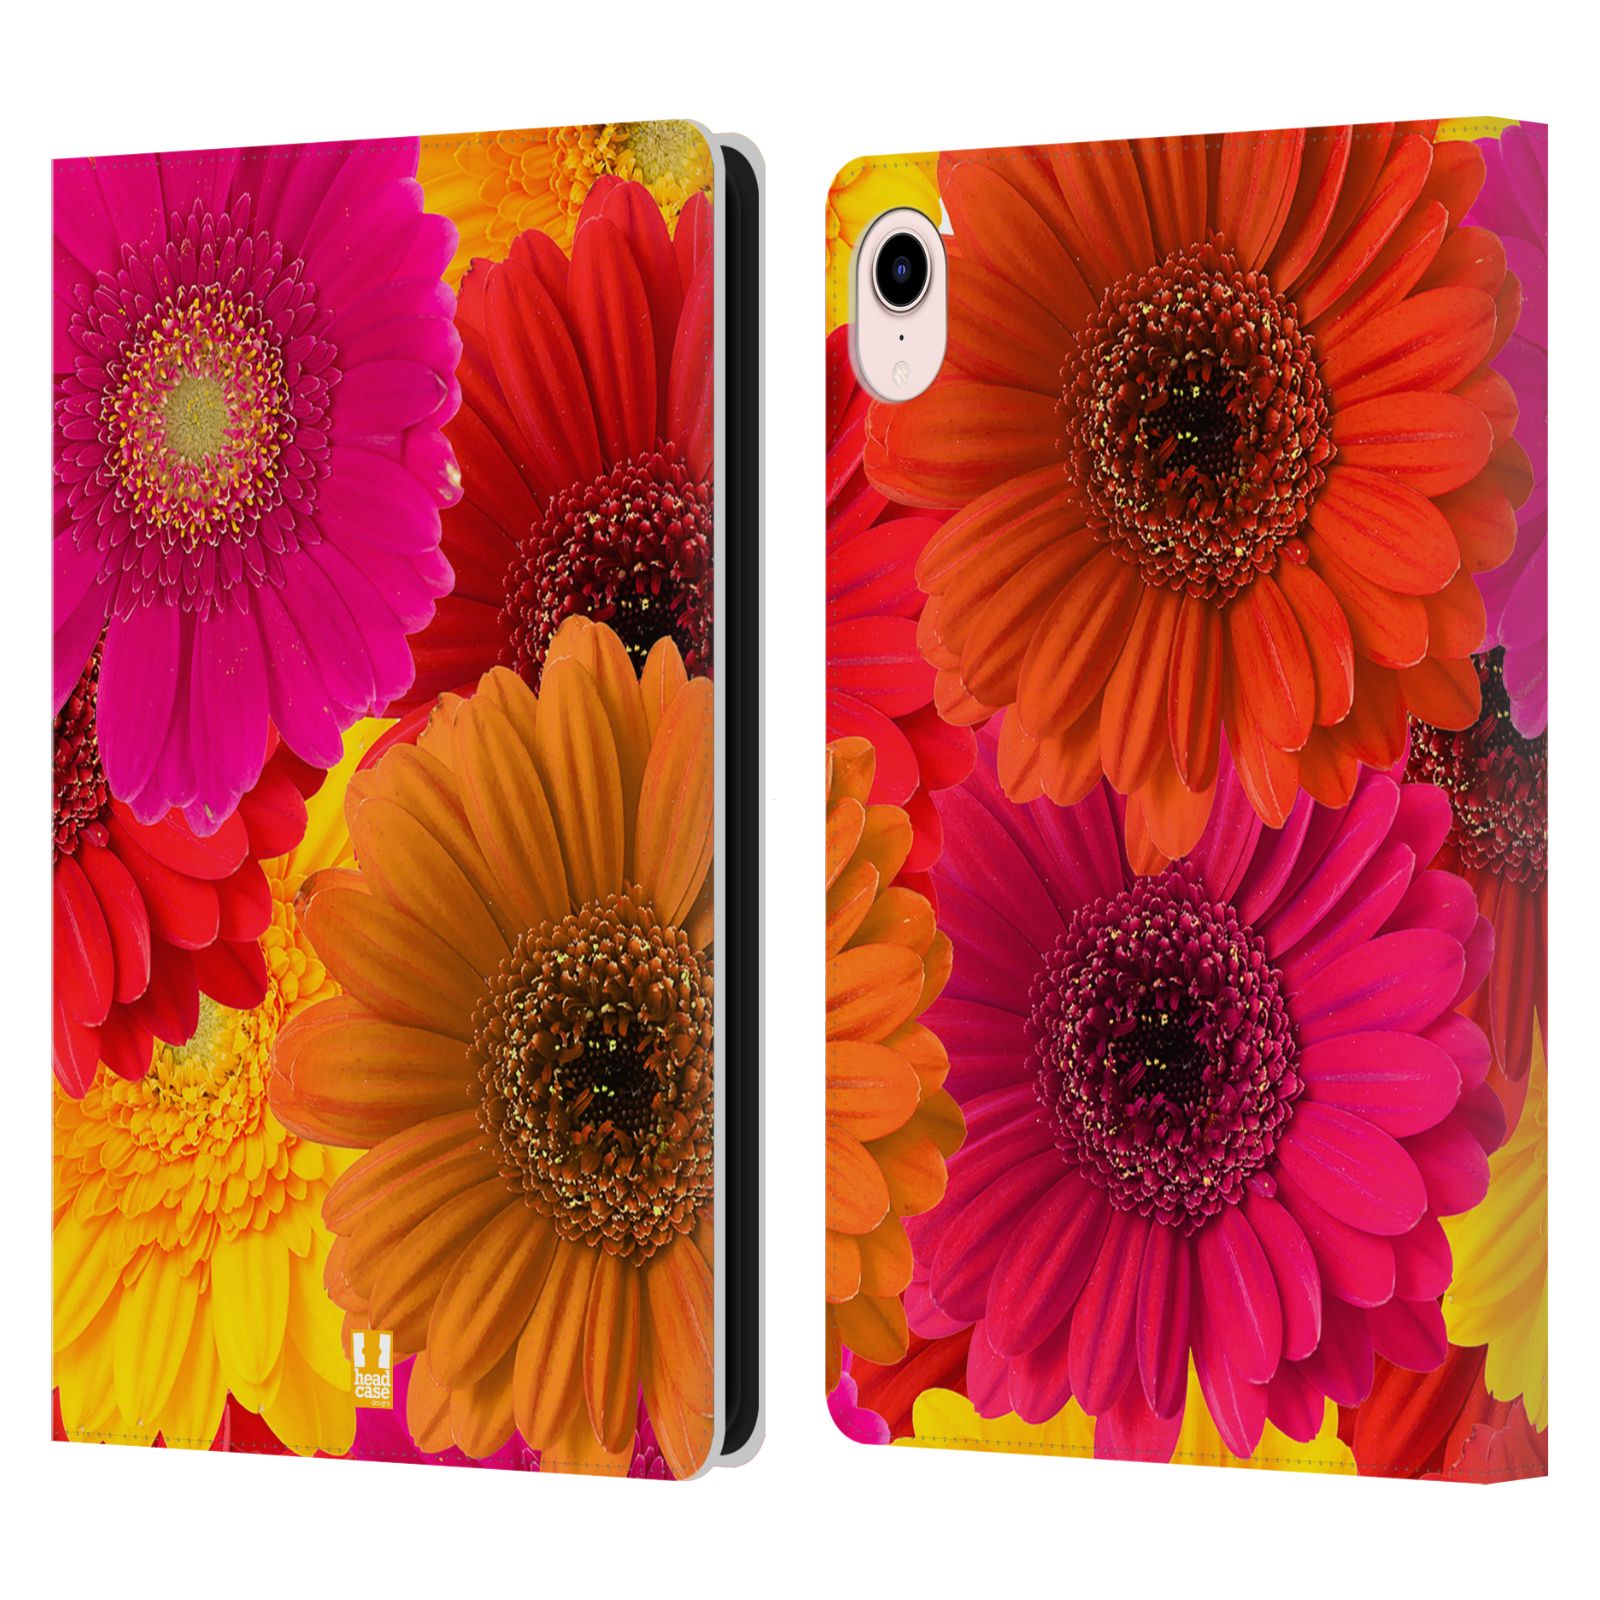 Pouzdro pro tablet Apple Ipad MINI (2021) - HEAD CASE - květy foto fialová, oranžová GERBERA